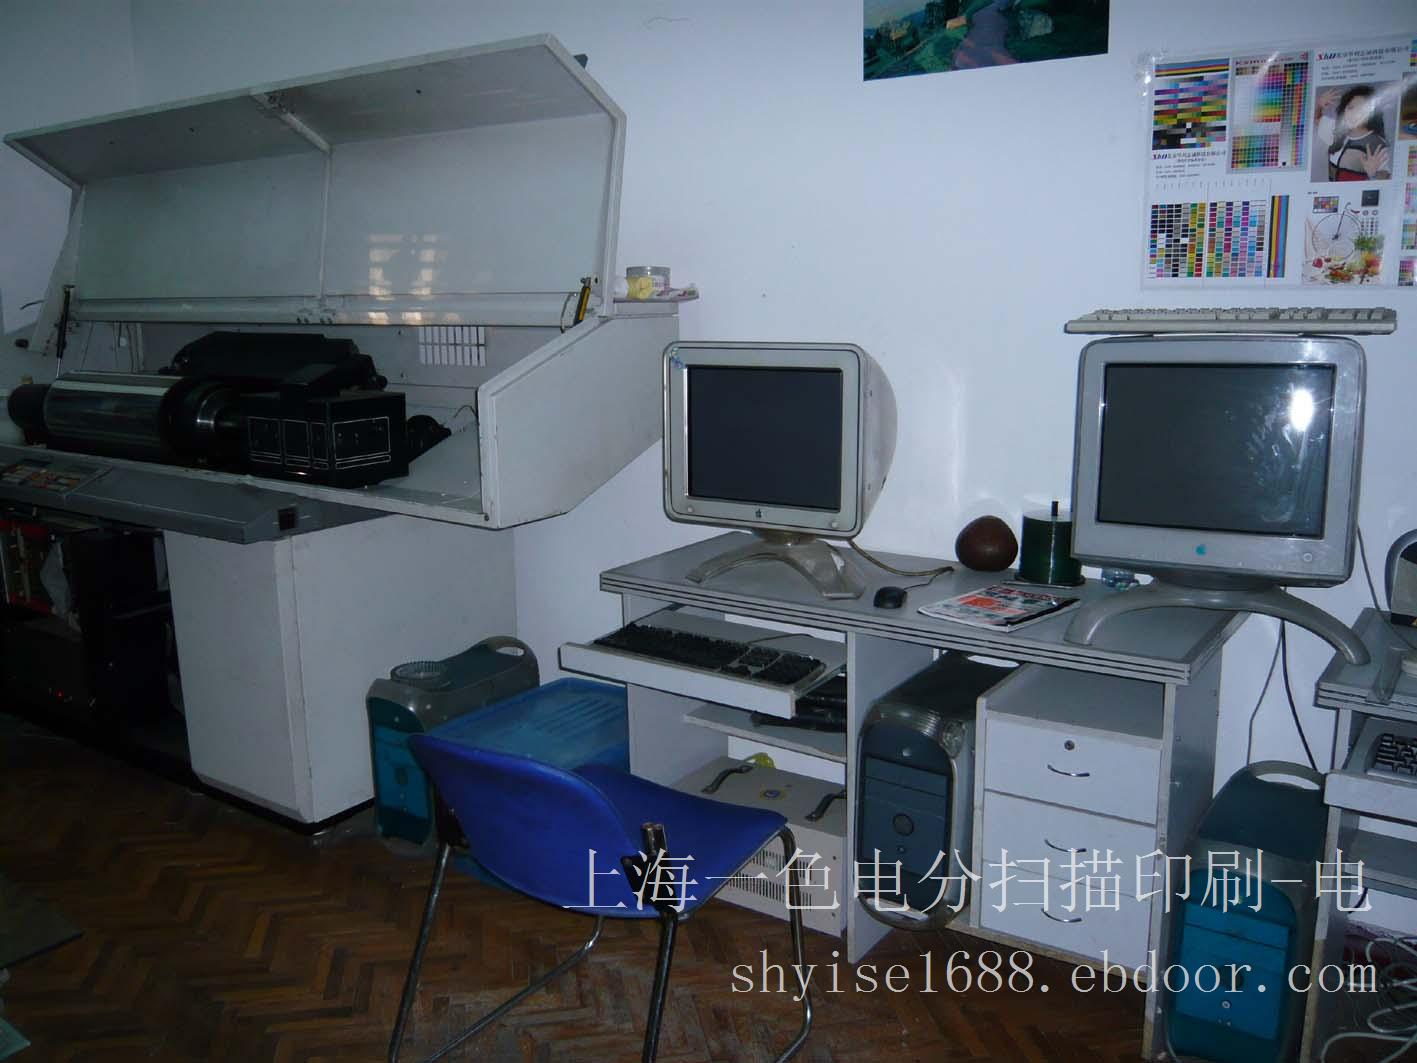 上海国画电分扫描-青浦区国画电分扫描电话-青浦国画高清电分扫描公司